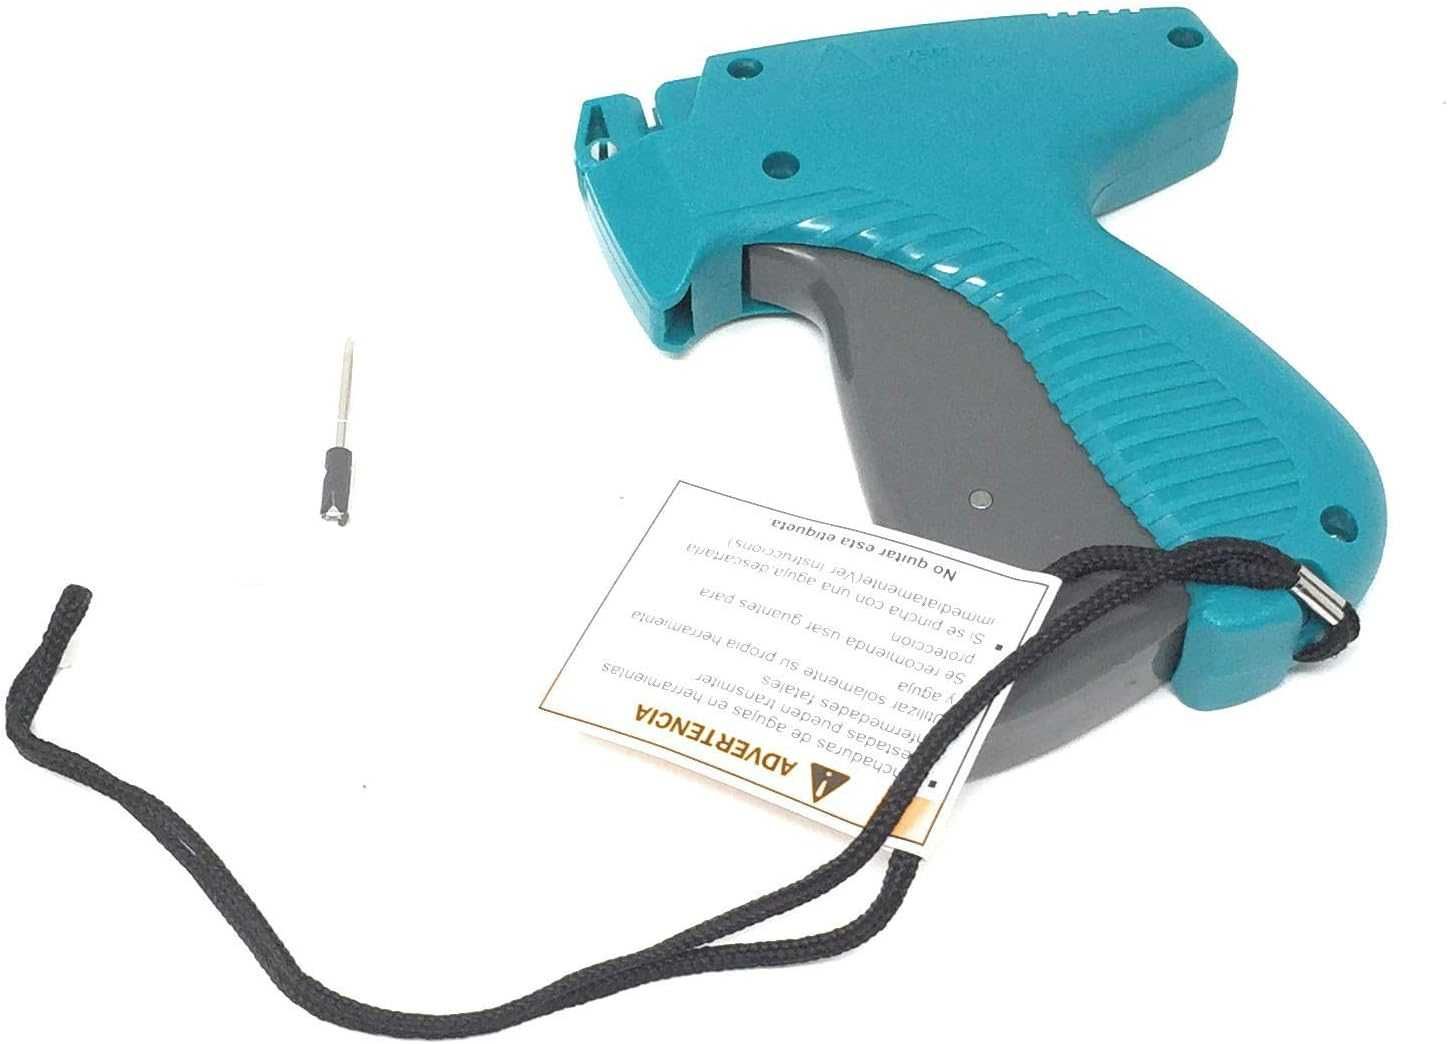 Pistol taguri AVERY Dennison Mark III Pistol Grip Tool